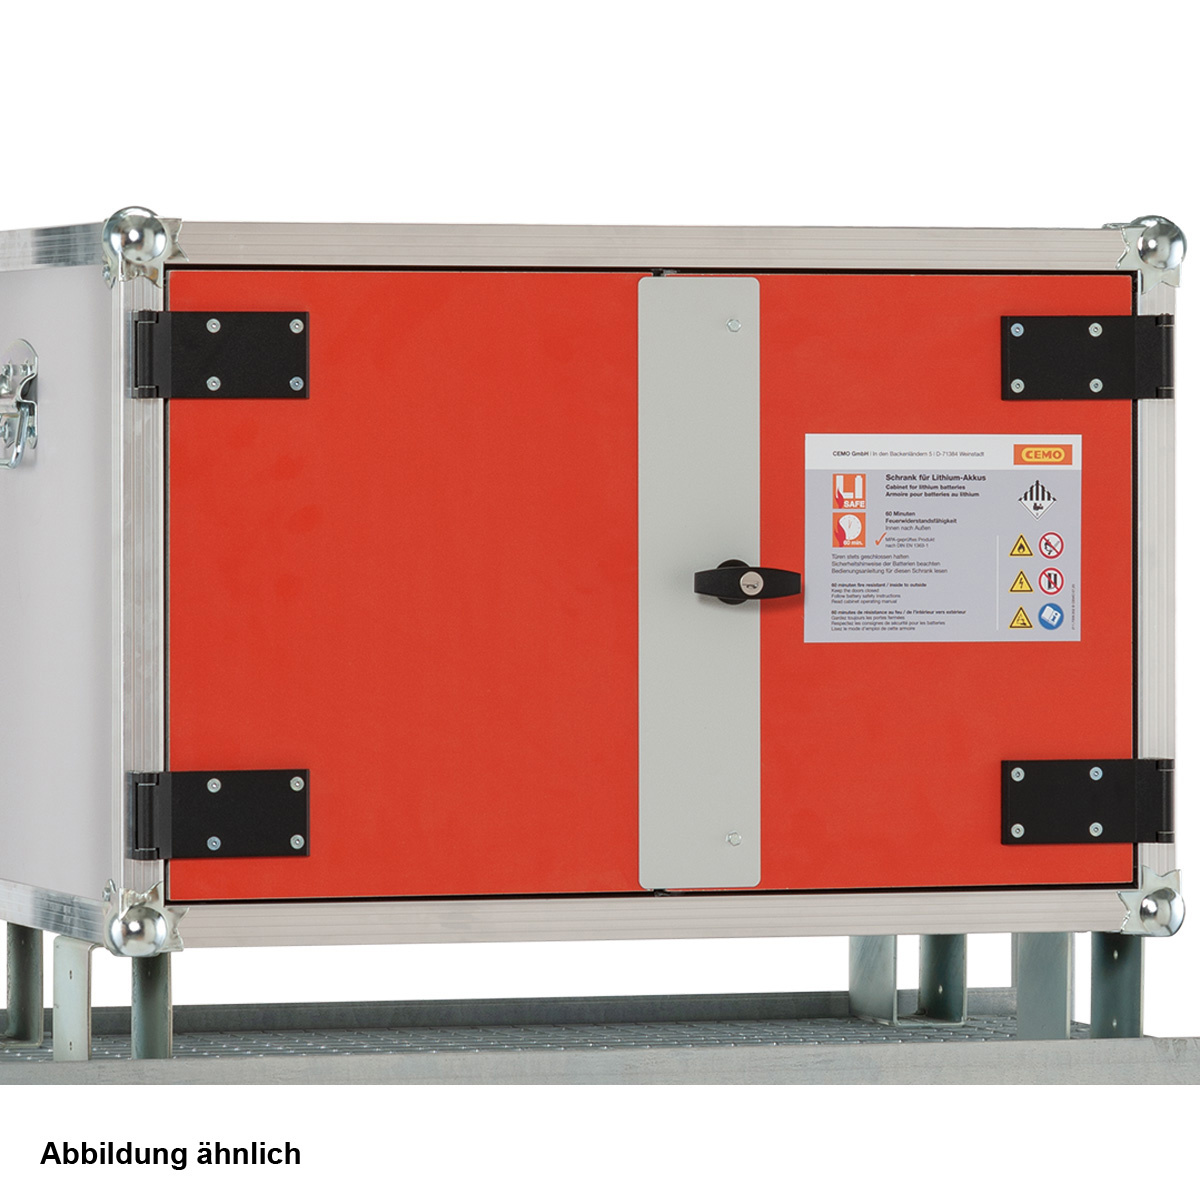 Li-SAFE Akku-Ladeschrank 8/5 lockEX Premium, 1-ph, mit Rauchmelder, Steckdose, Lüftung, Füßen